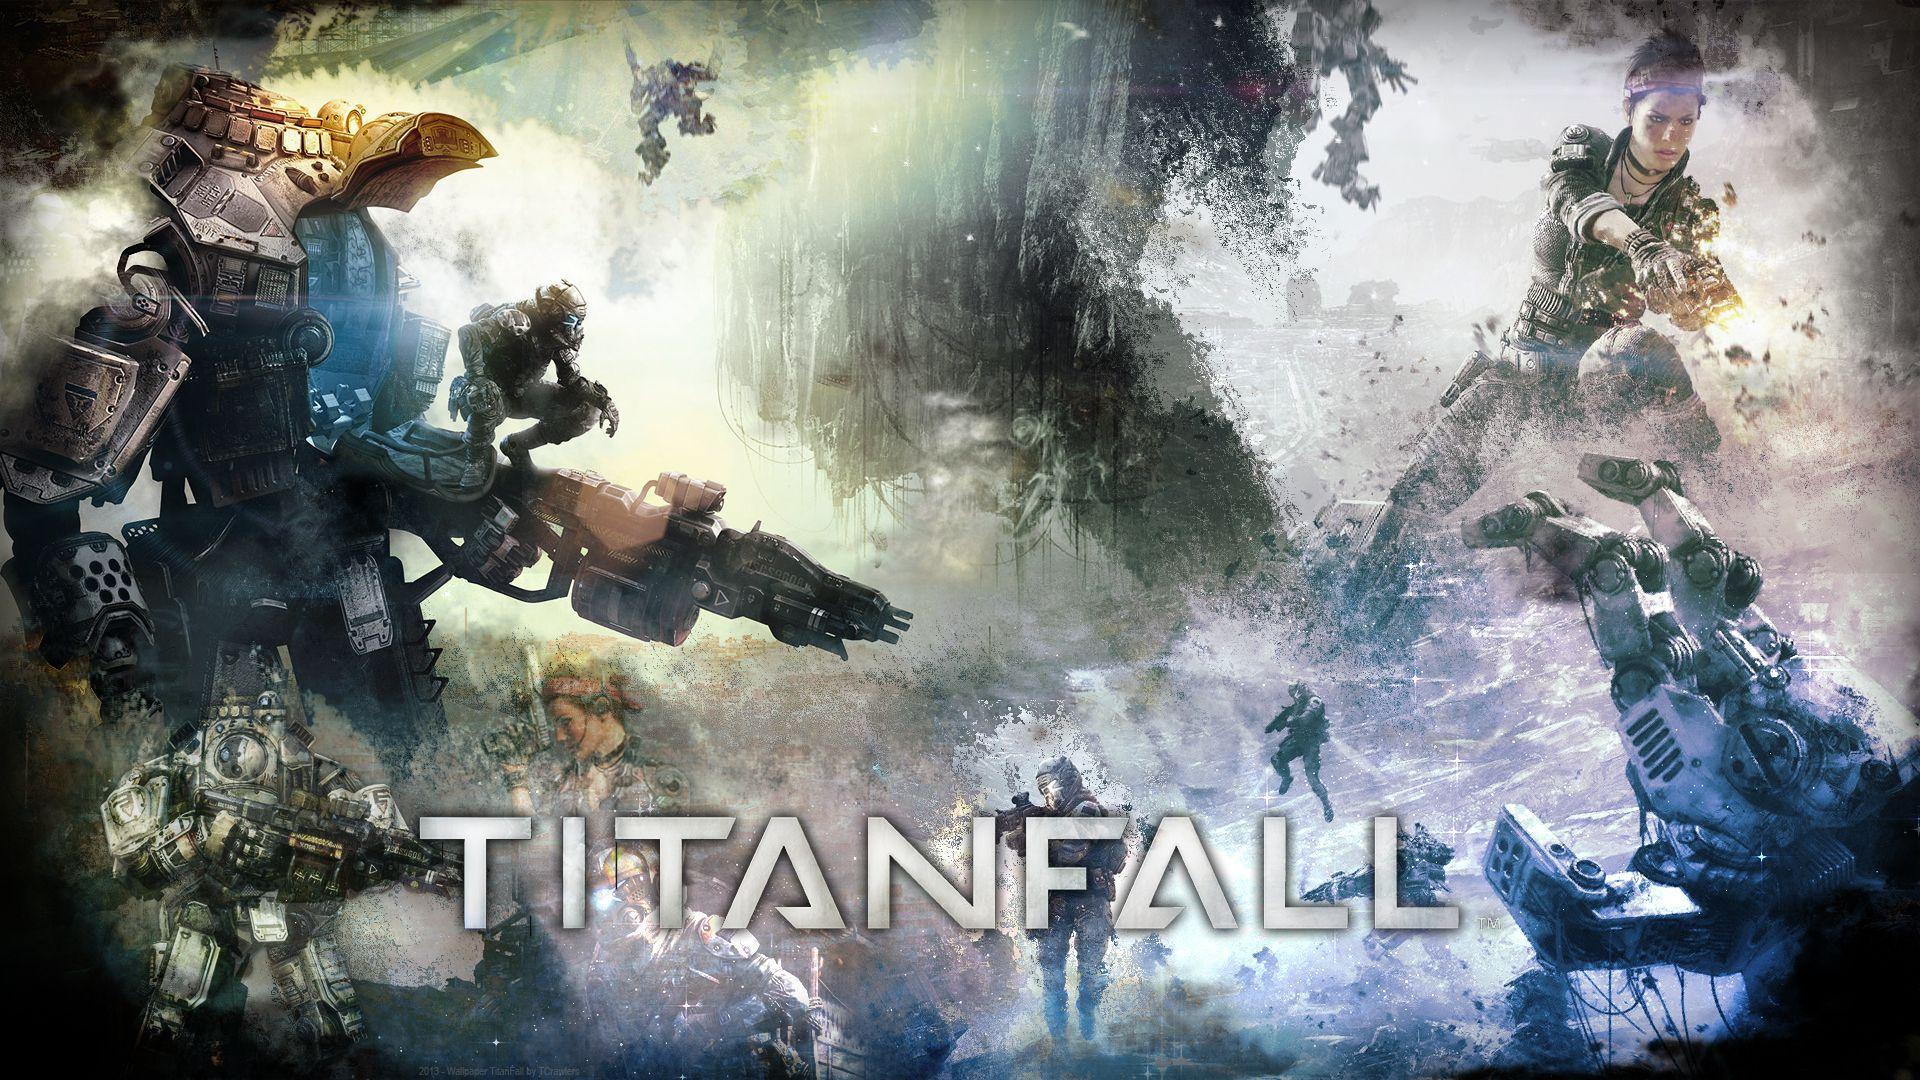 TITANFALL GAME 2014 wallpaper